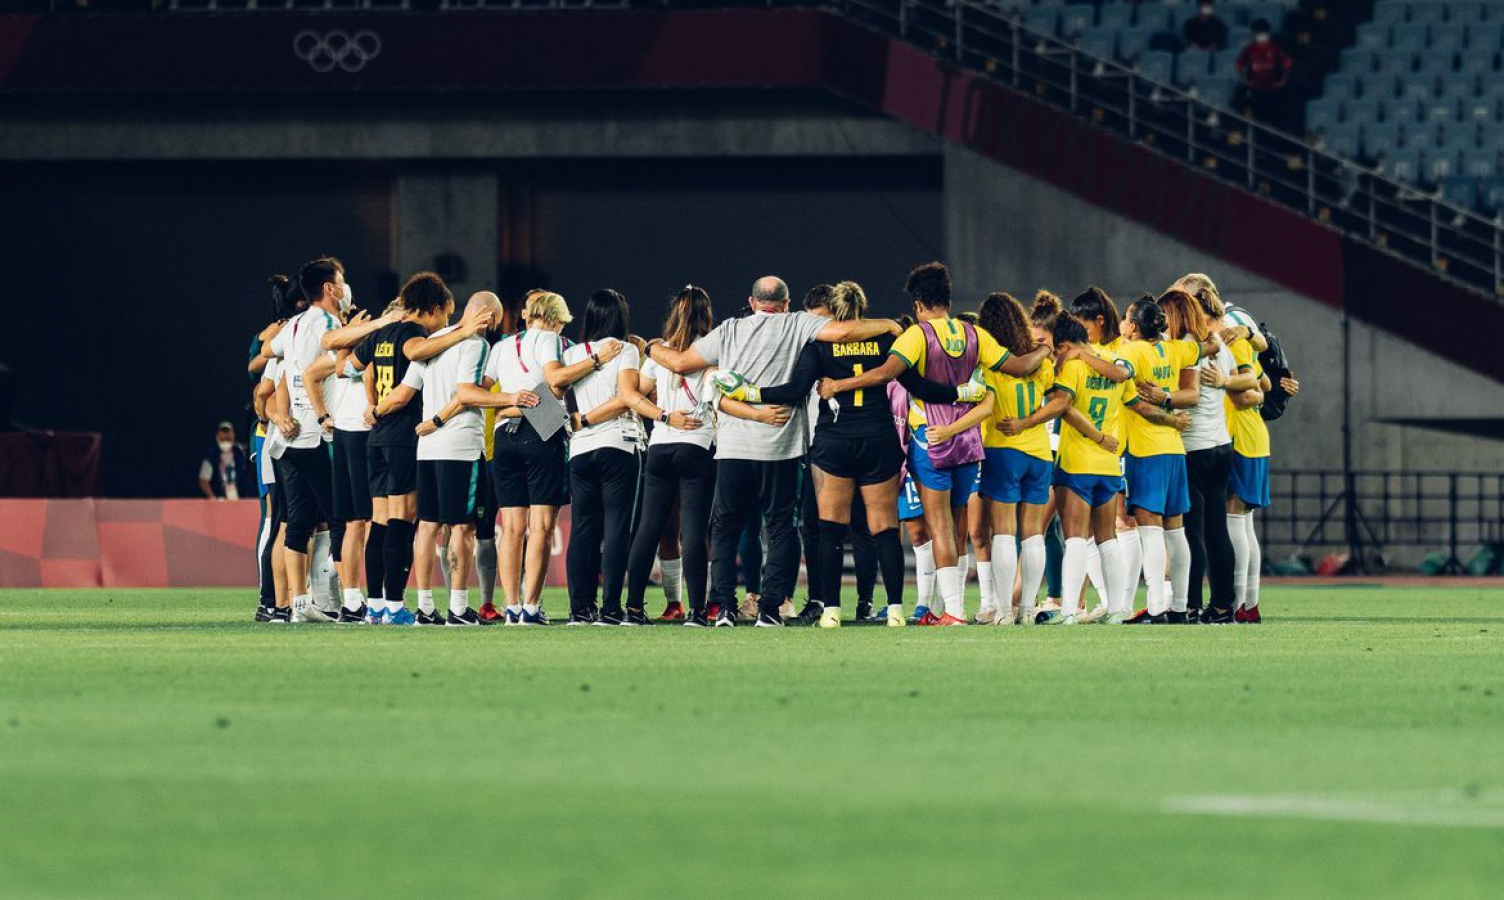 Brasil perde nos pênaltis e está eliminado do futebol feminino